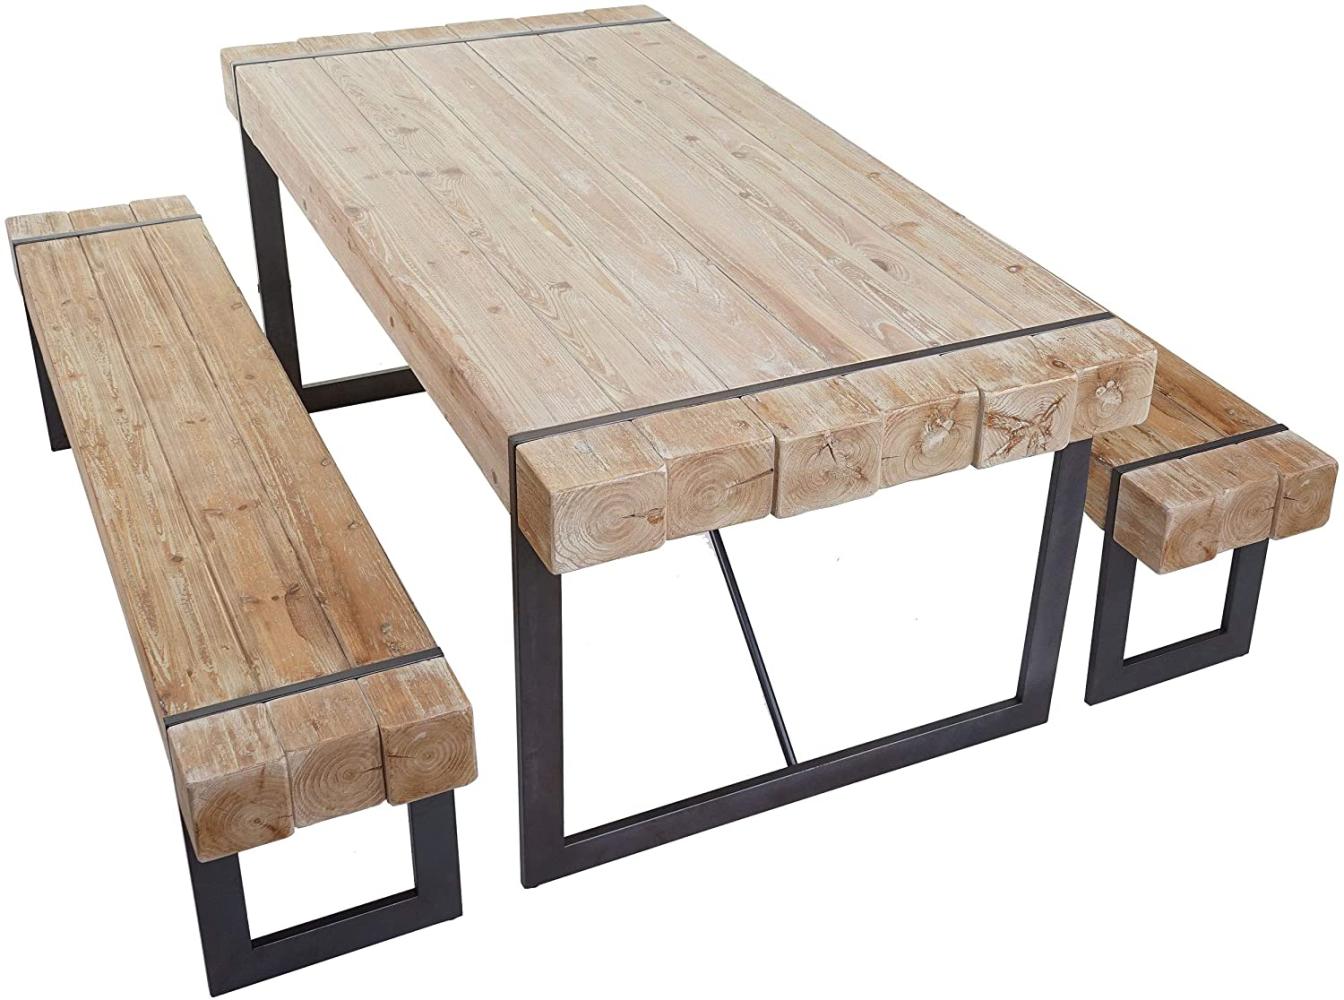 Esszimmergarnitur HWC-A15, Esstisch + 2x Sitzbank, Tanne Holz rustikal massiv MVG-zertifiziert ~ naturfarben 160cm Bild 1